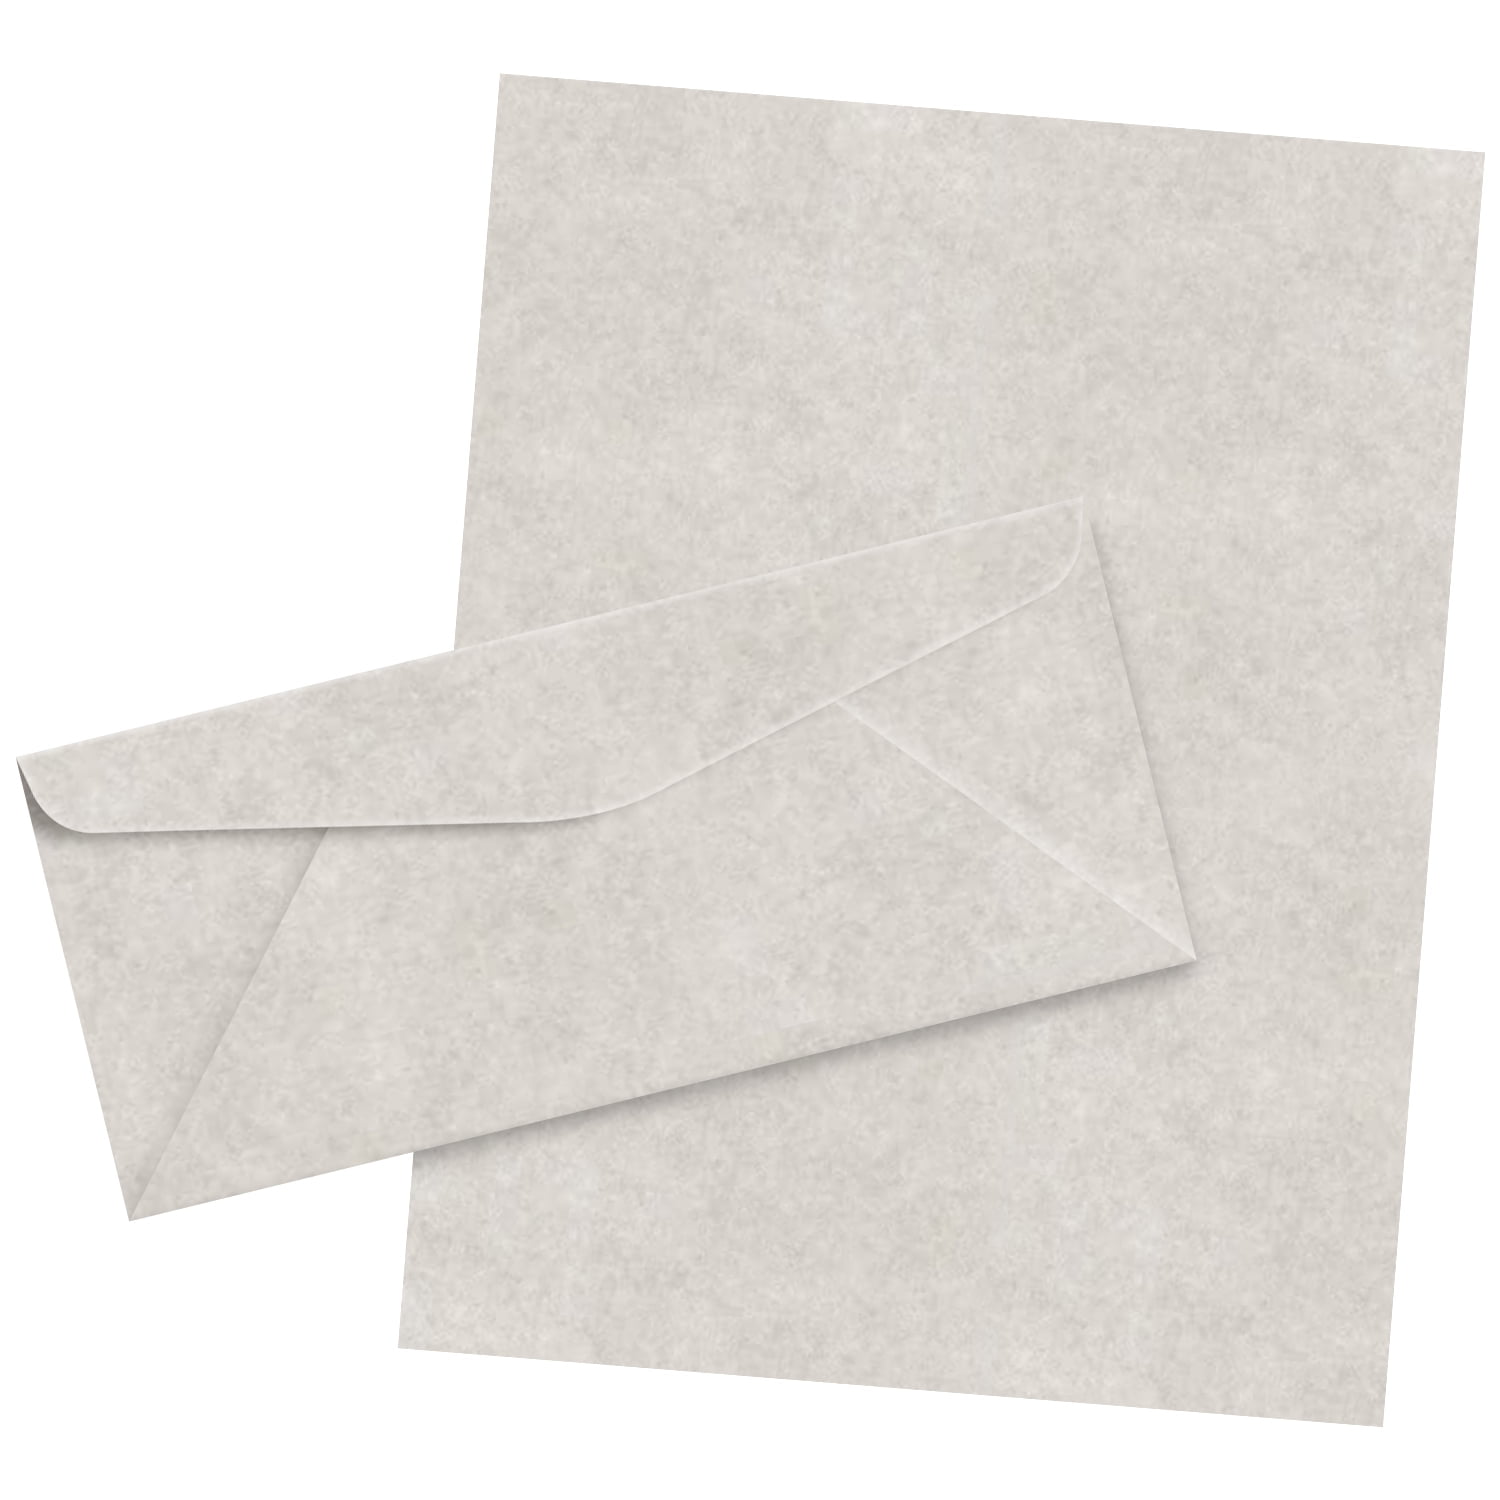 【Pack 48 】Vintage Envelopes - Vintage Style Envelopes - Classic Aged  Envelopes in 6 Unique Designs - Old Looking Envelopes- Antique Style  Envelopes- 4